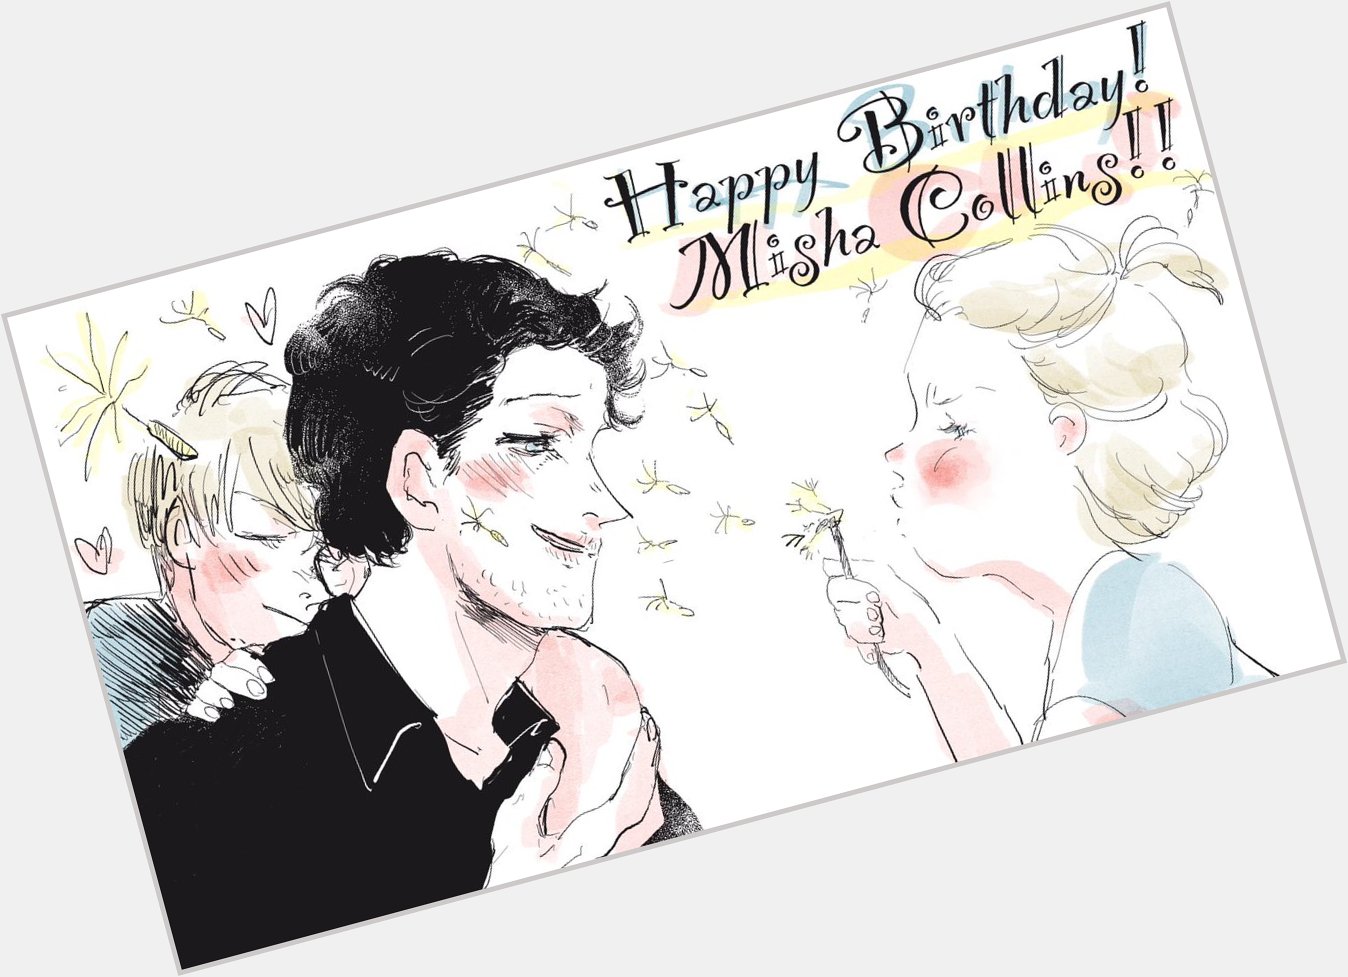 Happy Birthday Misha Collins!!!                              